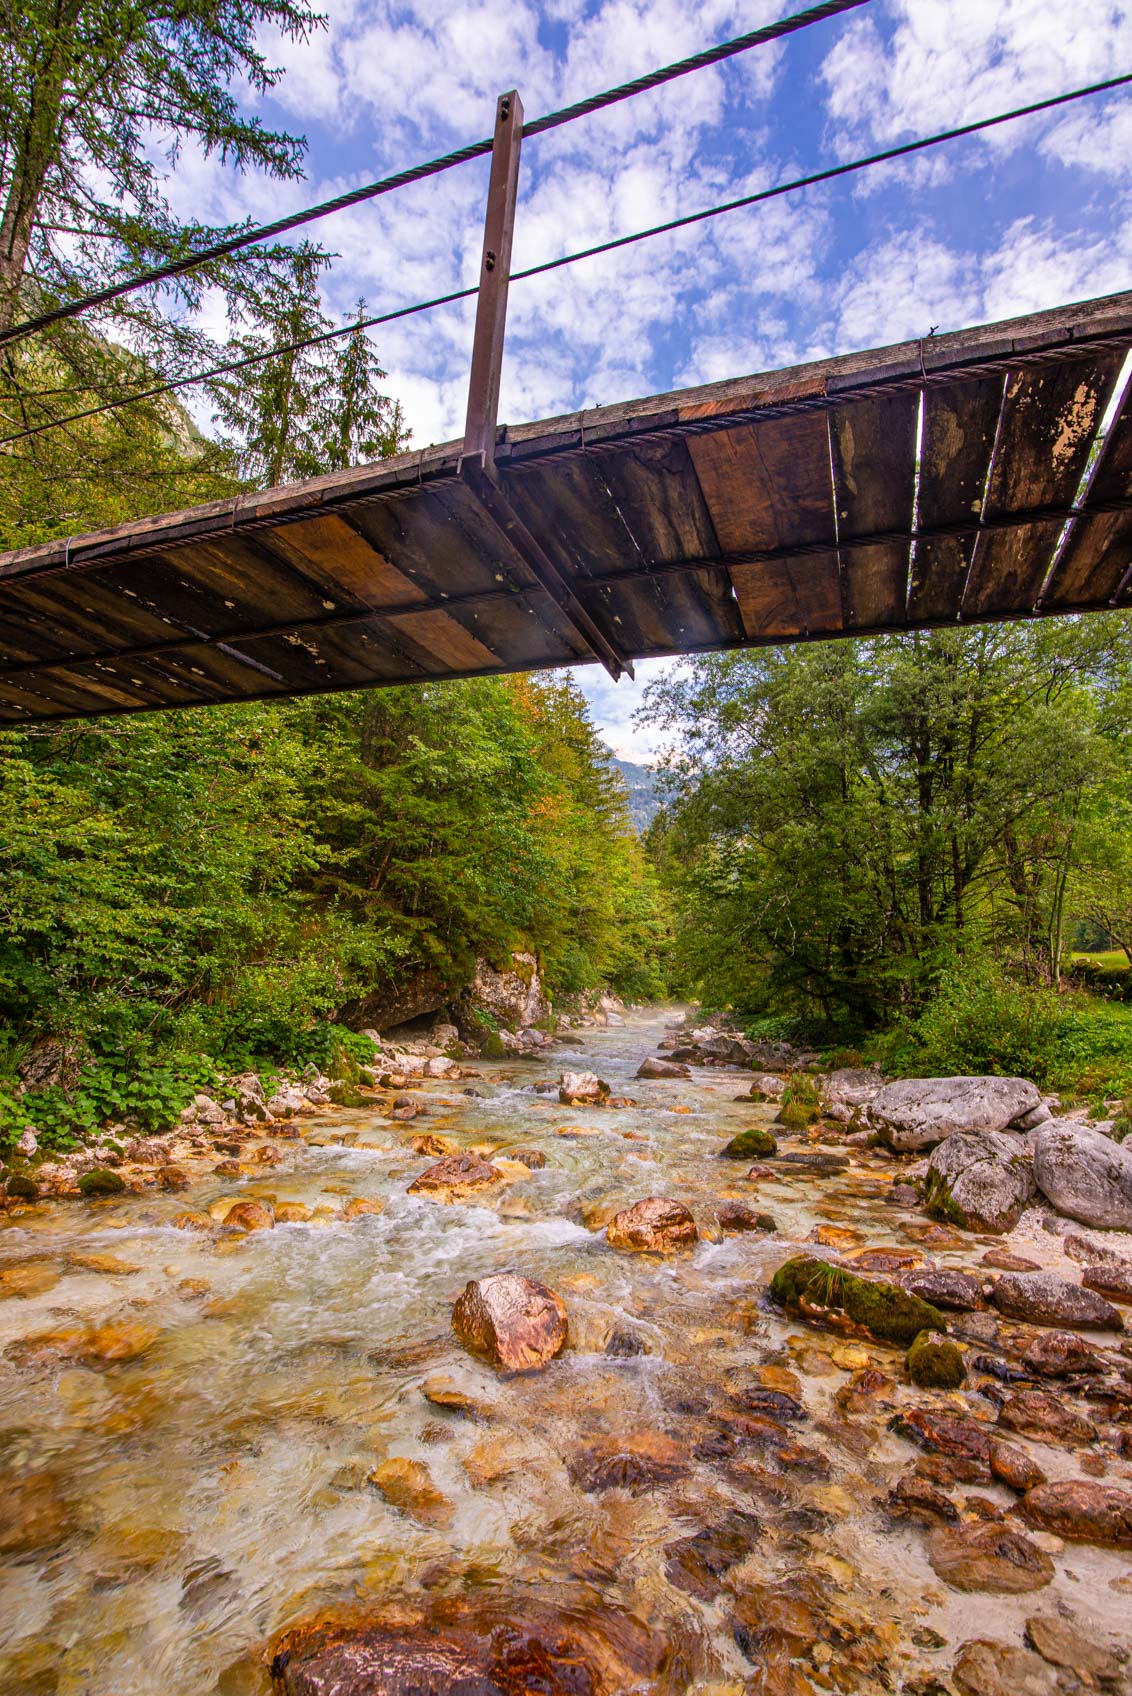 Road trip dans le parc naturel Triglav Slovénie Europe Blog Voyage